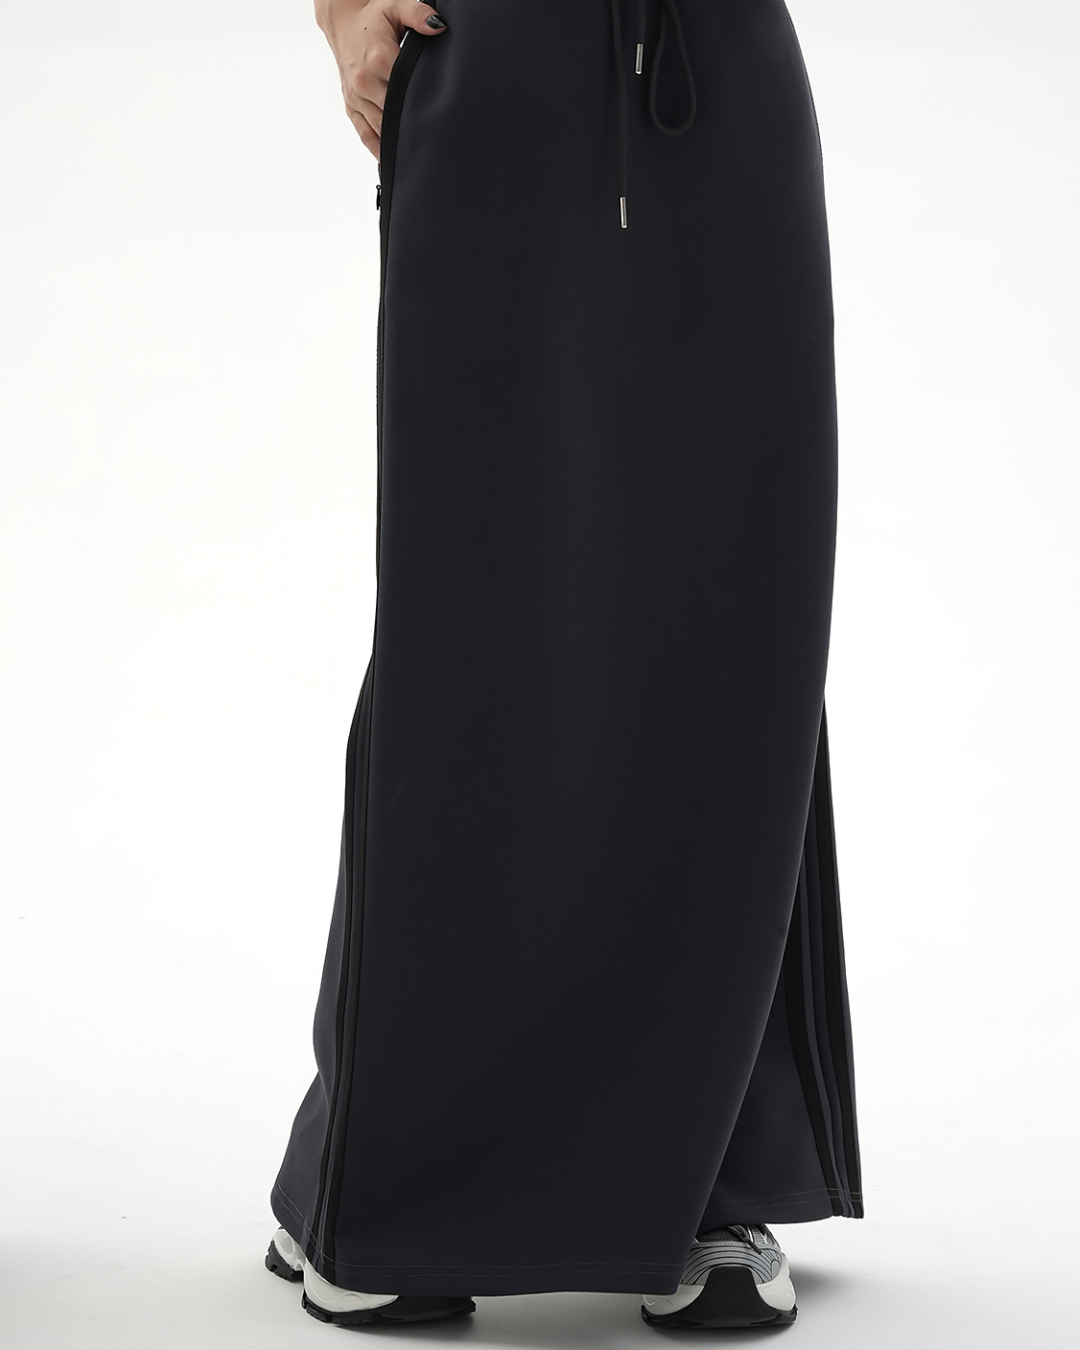 Halter Neck Sleeveless Top & Side Line Skirt